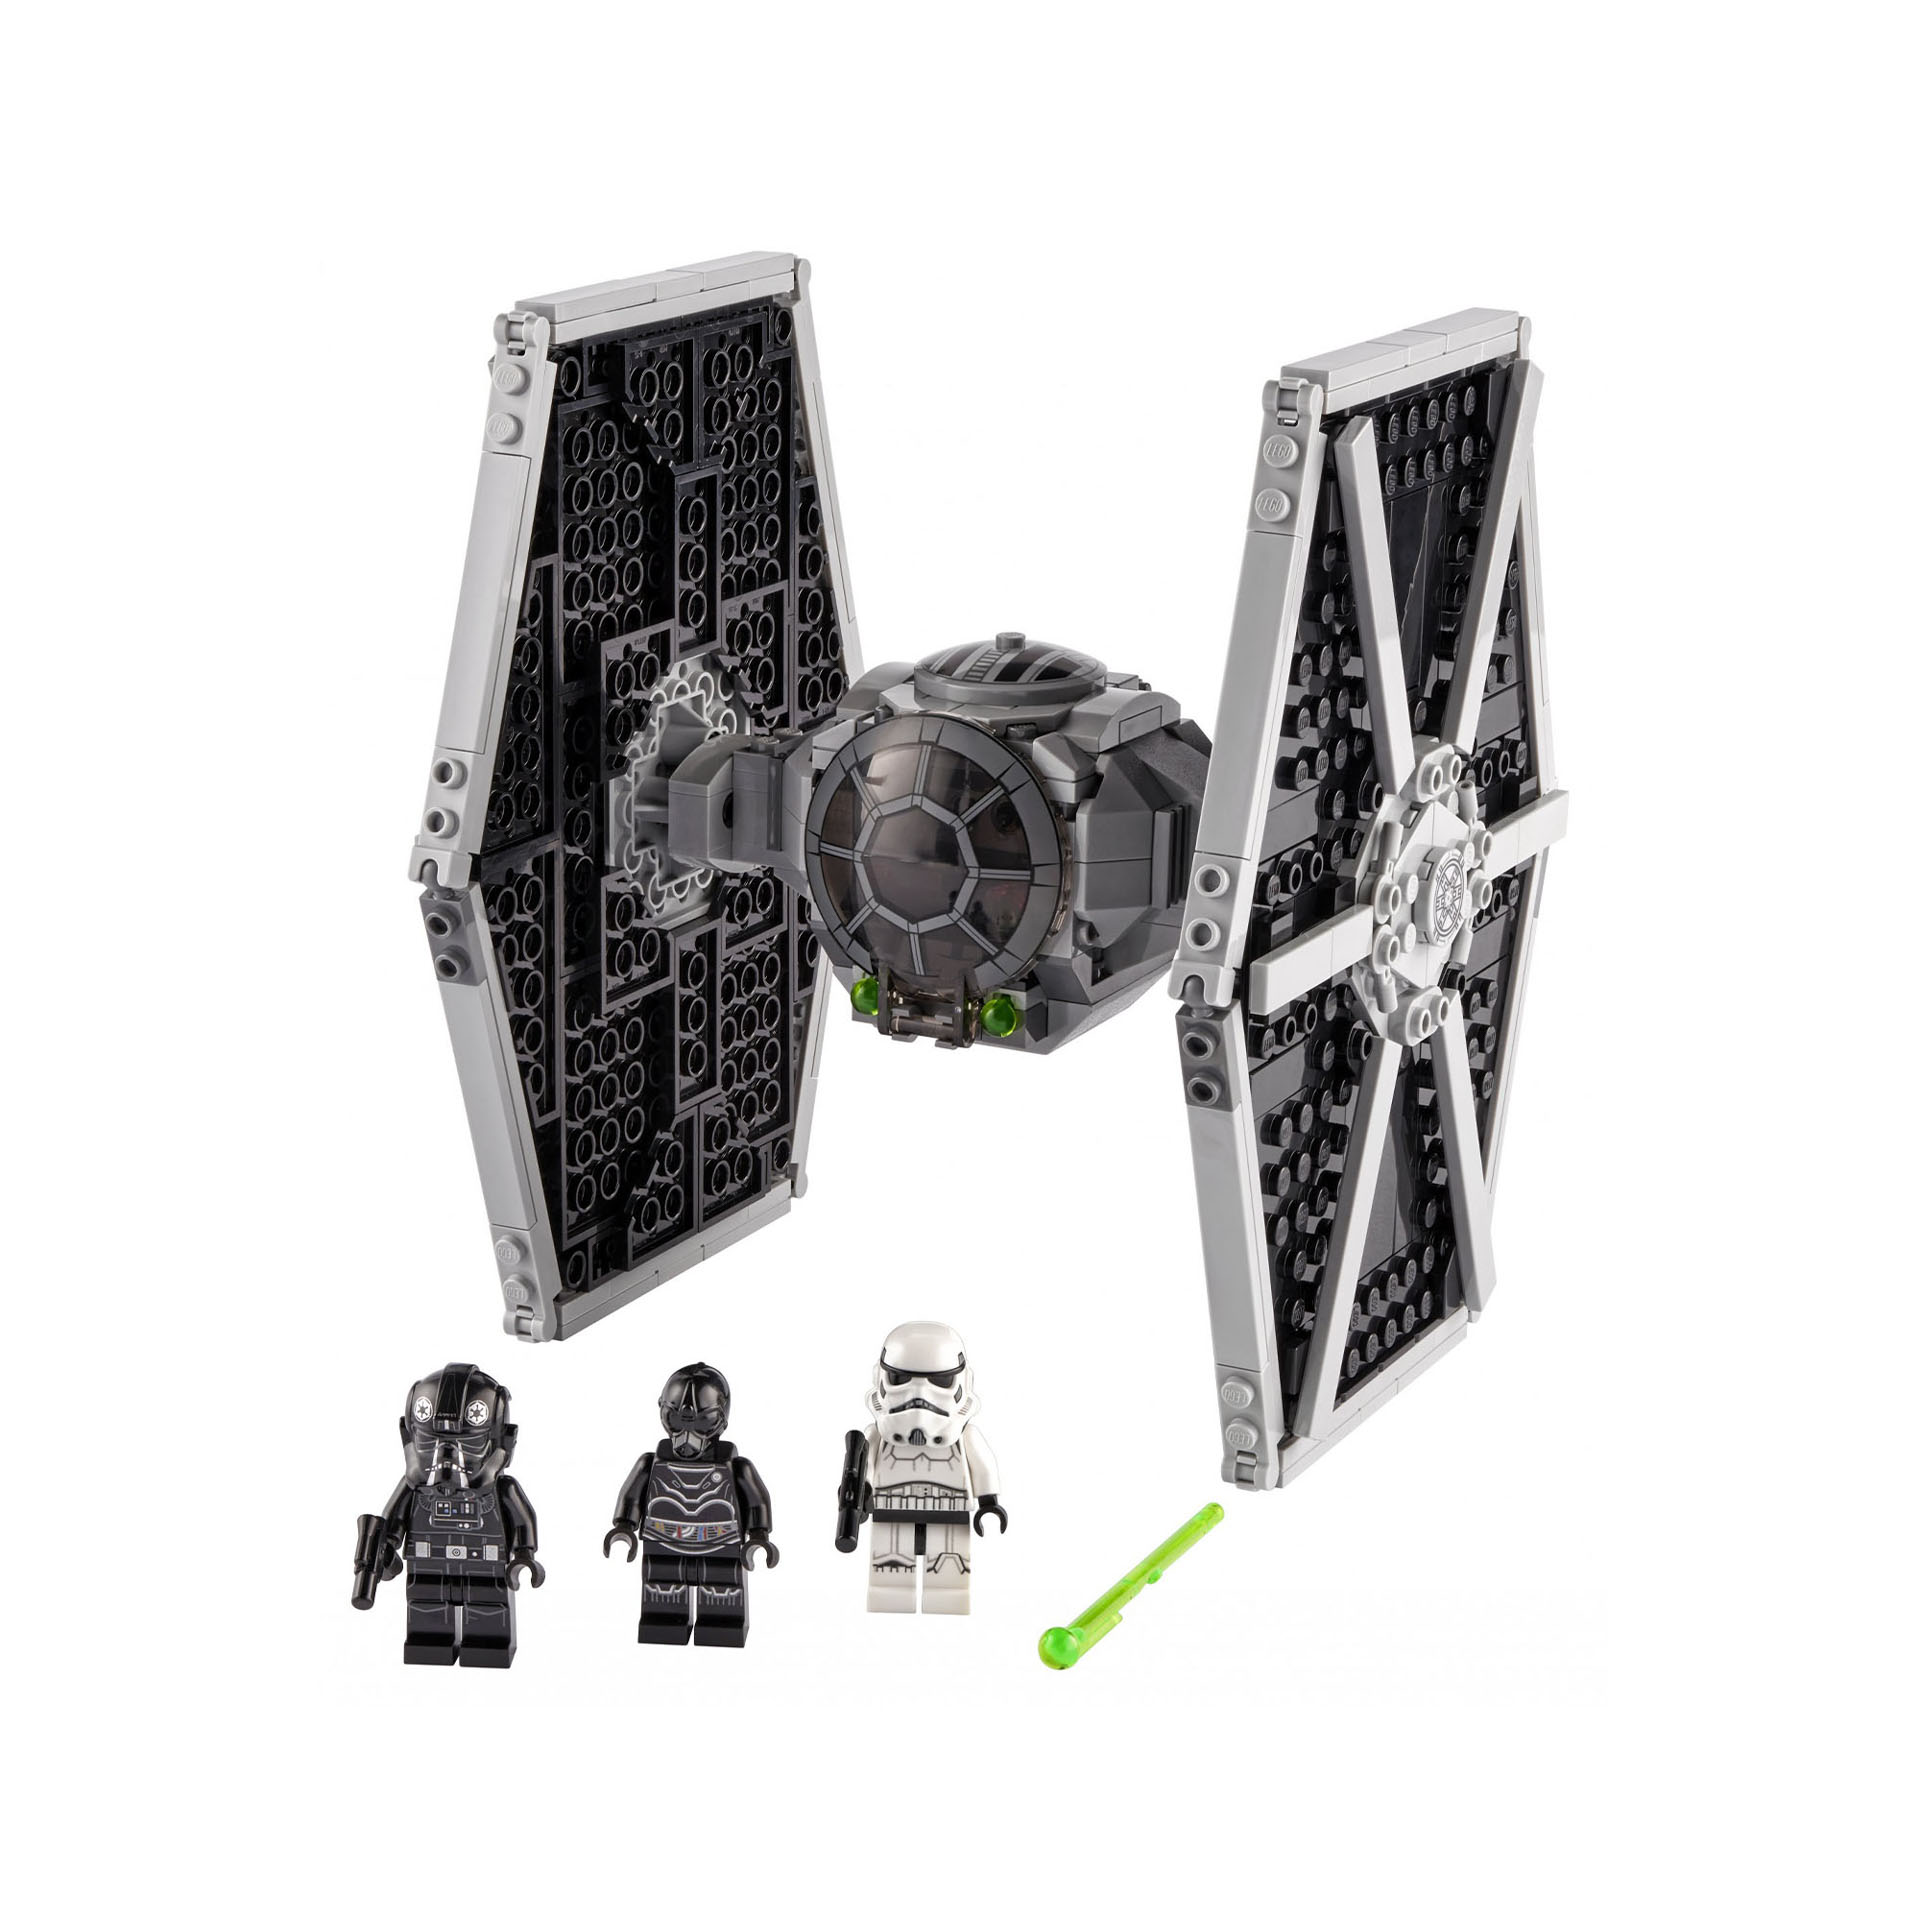 LEGO Star Wars Imperial TIE Fighter, Giocattolo con Stormtrooper e Minifigure de 75300, , large